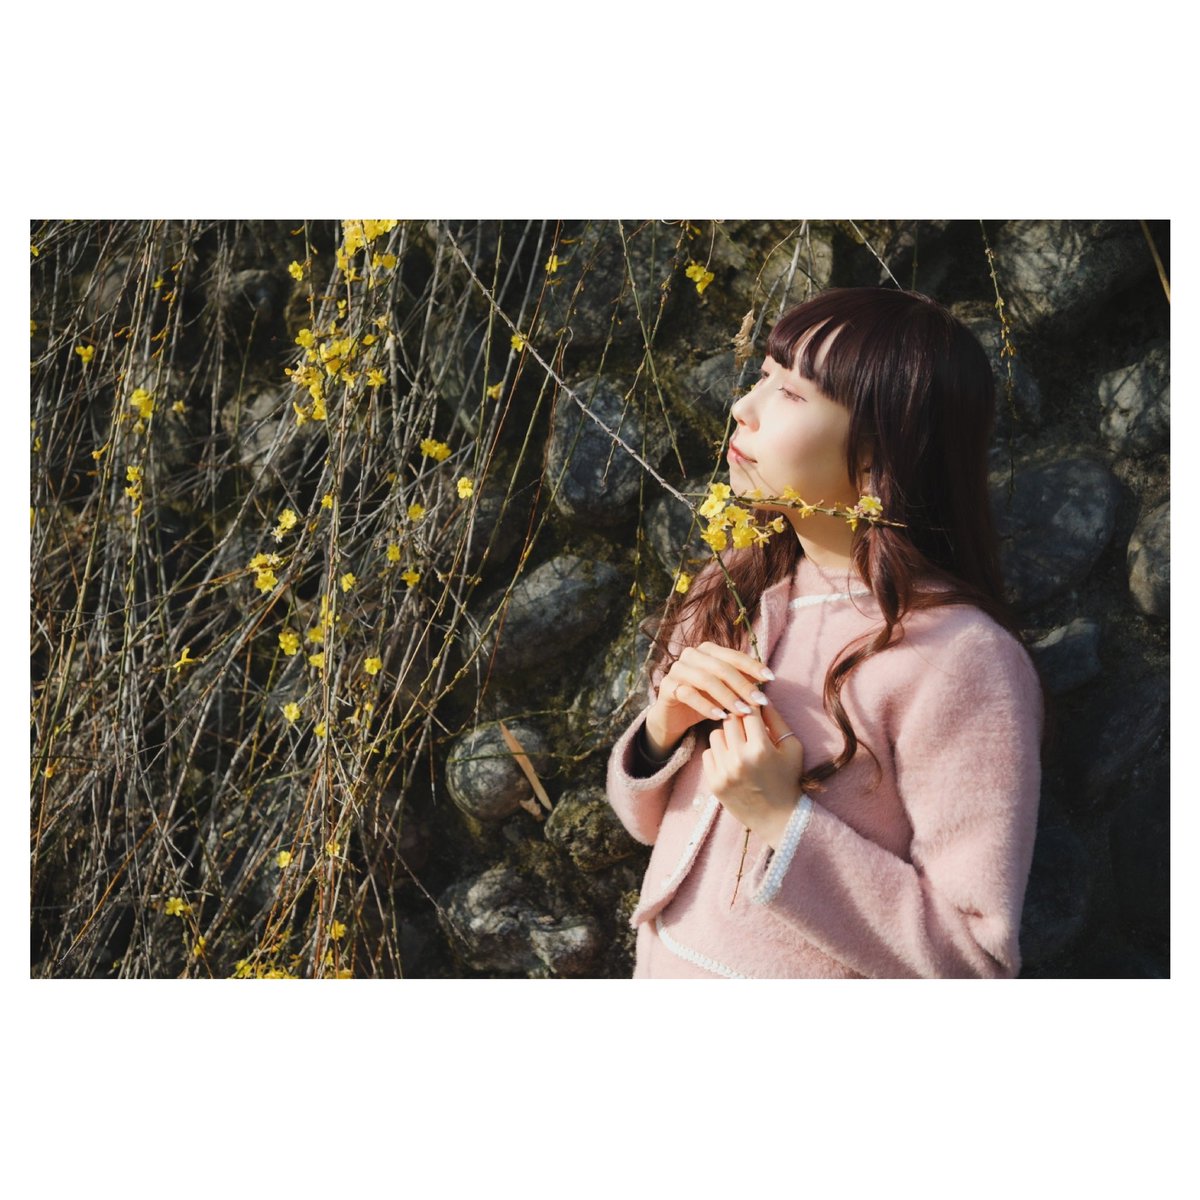 崖に咲く黄色い花〔みみ〕
@Mimi_usagiOoo 

#人にはそれぞれ魅力がある
#ポートレート 
#portrait 
#被写体募集中 
#fujifilm_xseries